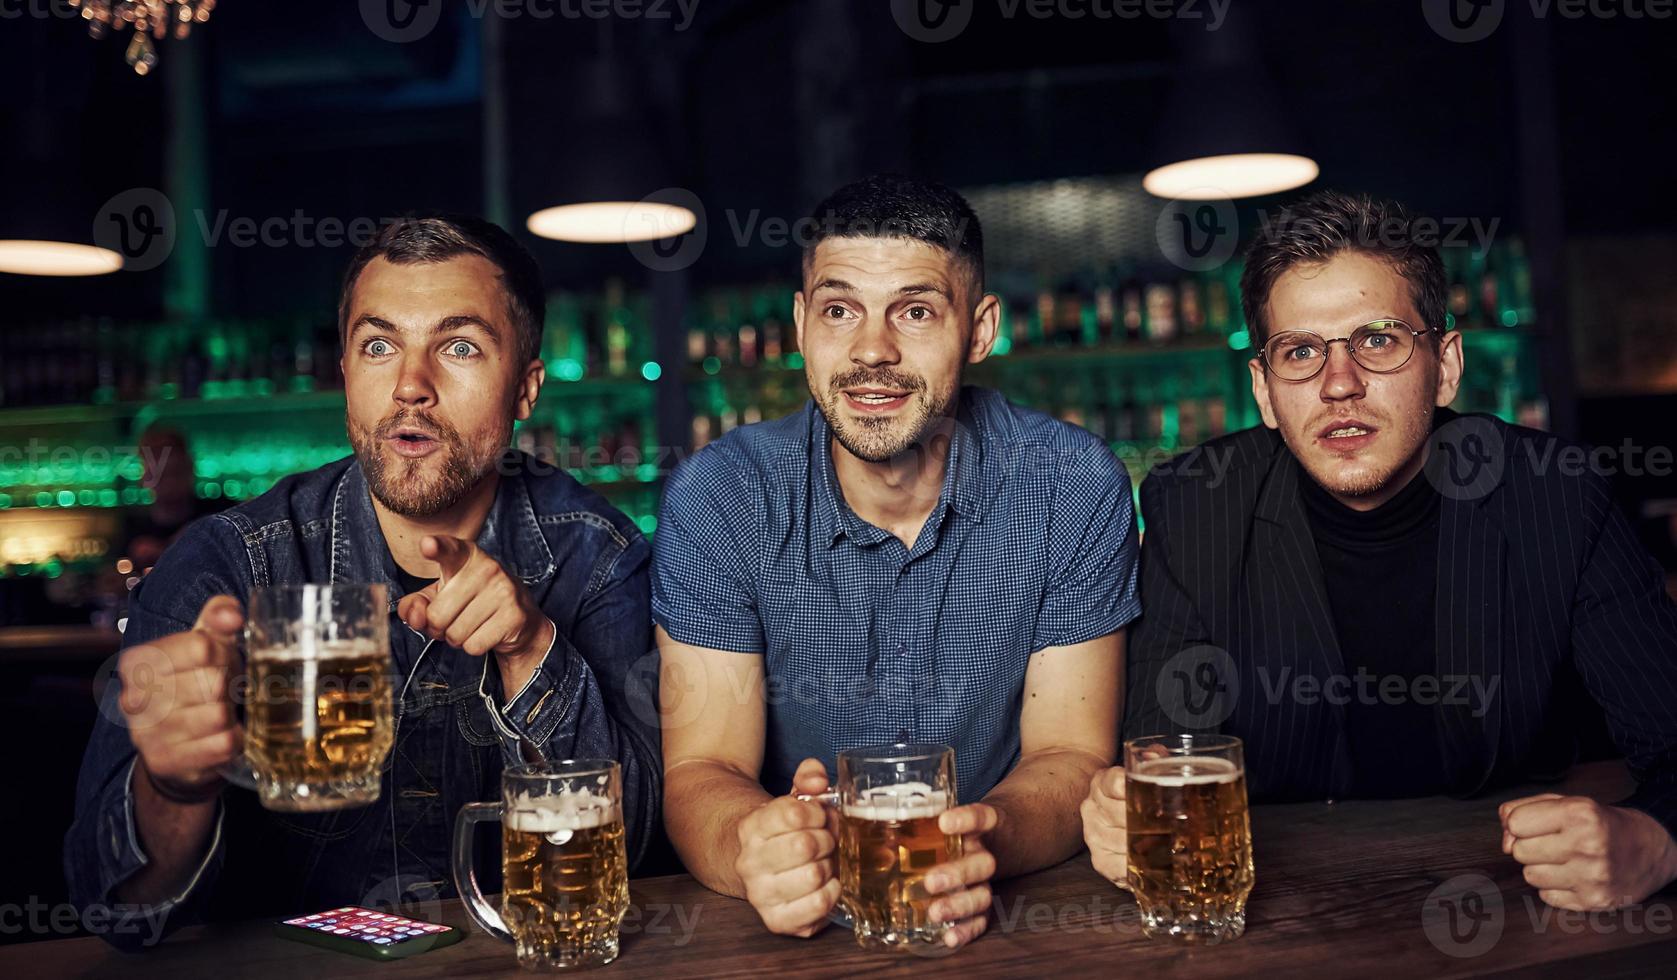 tre sporter fläktar i en bar tittar på fotboll. med öl i händer foto